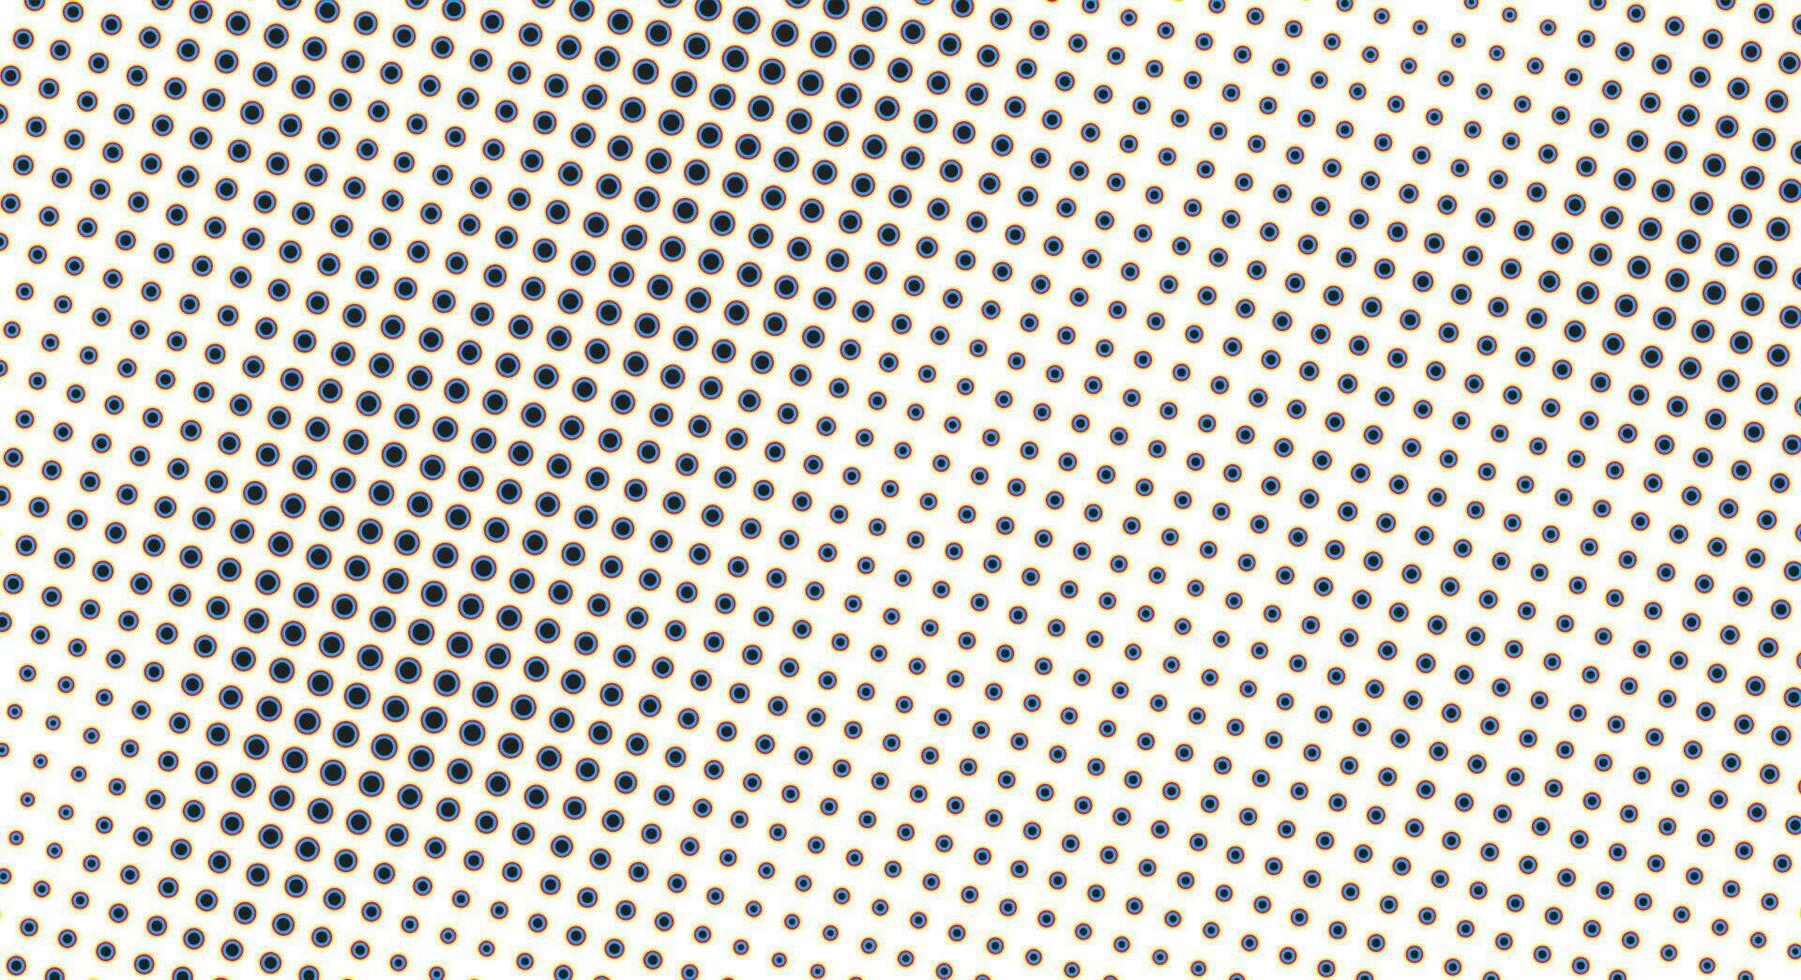 cmyk punt abstract backdrop in wit en blauw tonen in grunge stijl, monochroom achtergrond voor bedrijf kaart, poster, interieur ontwerp, sticker, website, reclame vector